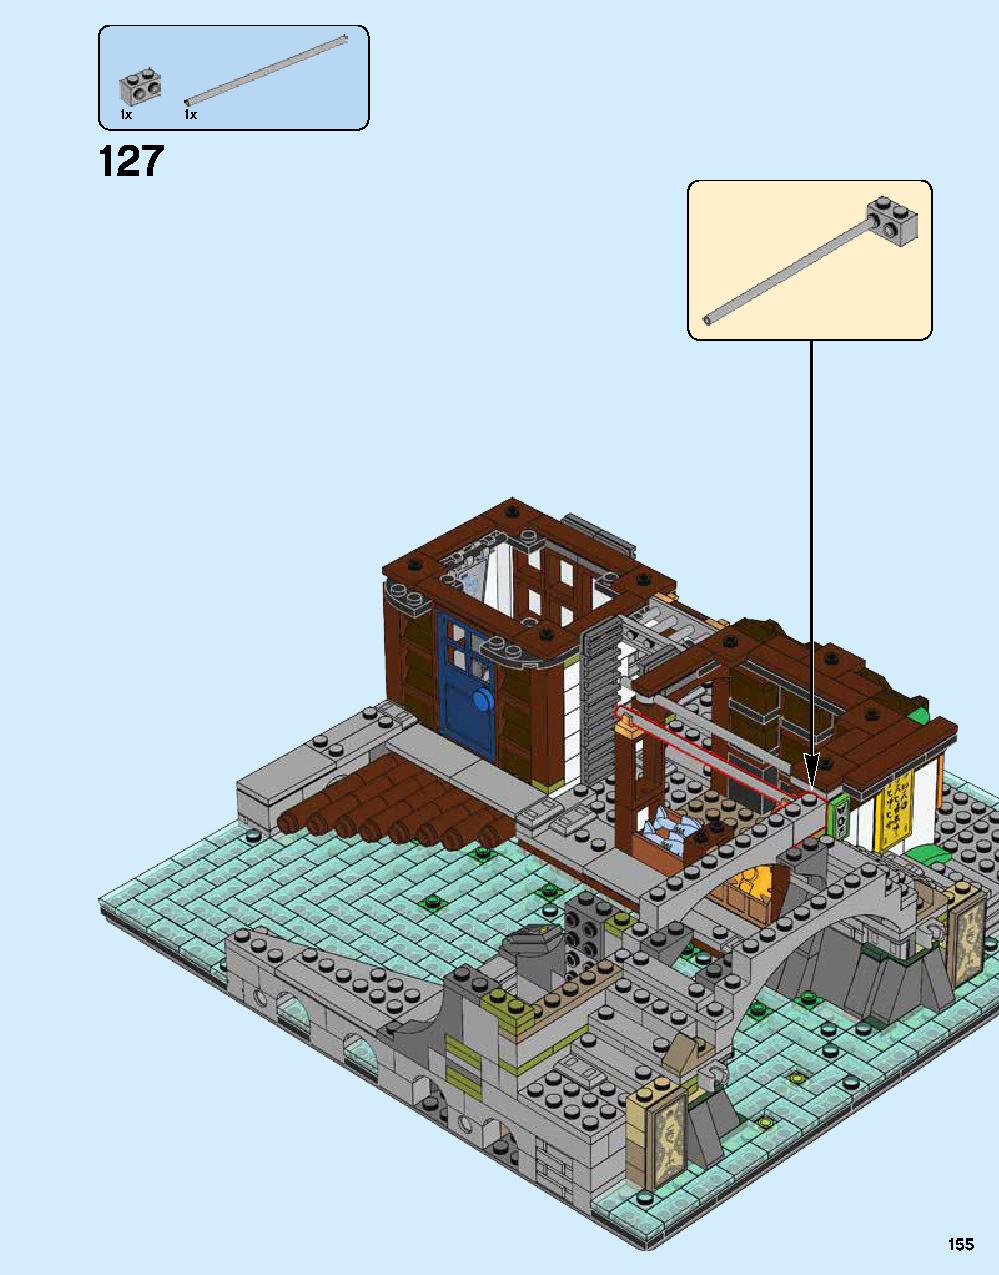 ニンジャゴー シティ 70620 レゴの商品情報 レゴの説明書・組立方法 155 page